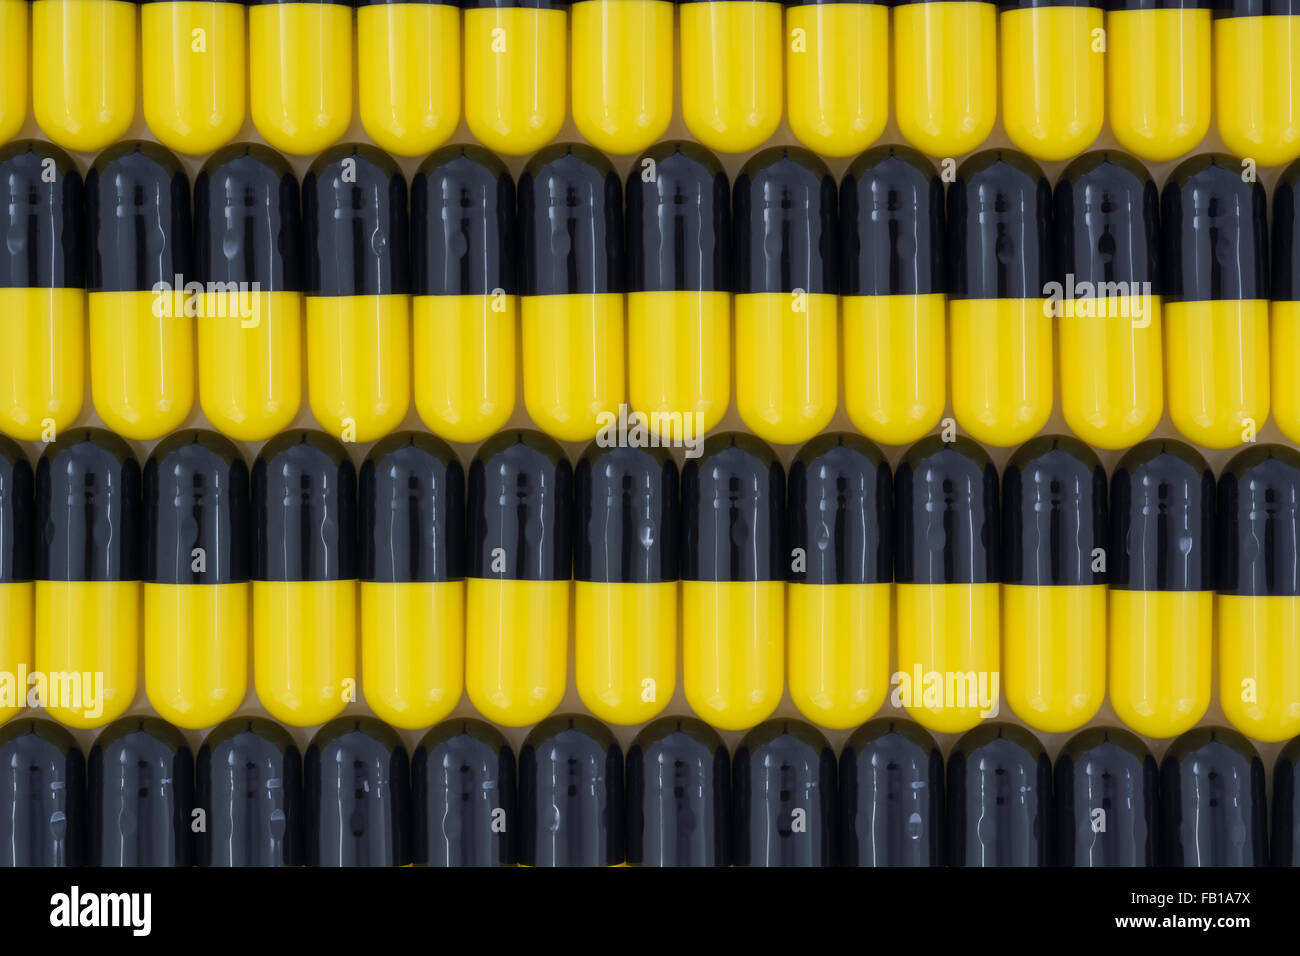 Close-up de píldoras - cápsulas de gelatina. Amarillo / Negro de pastillas. Metáfora Trump teniendo en empresas farmacéuticas estadounidenses por los altos precios de los medicamentos. Foto de stock